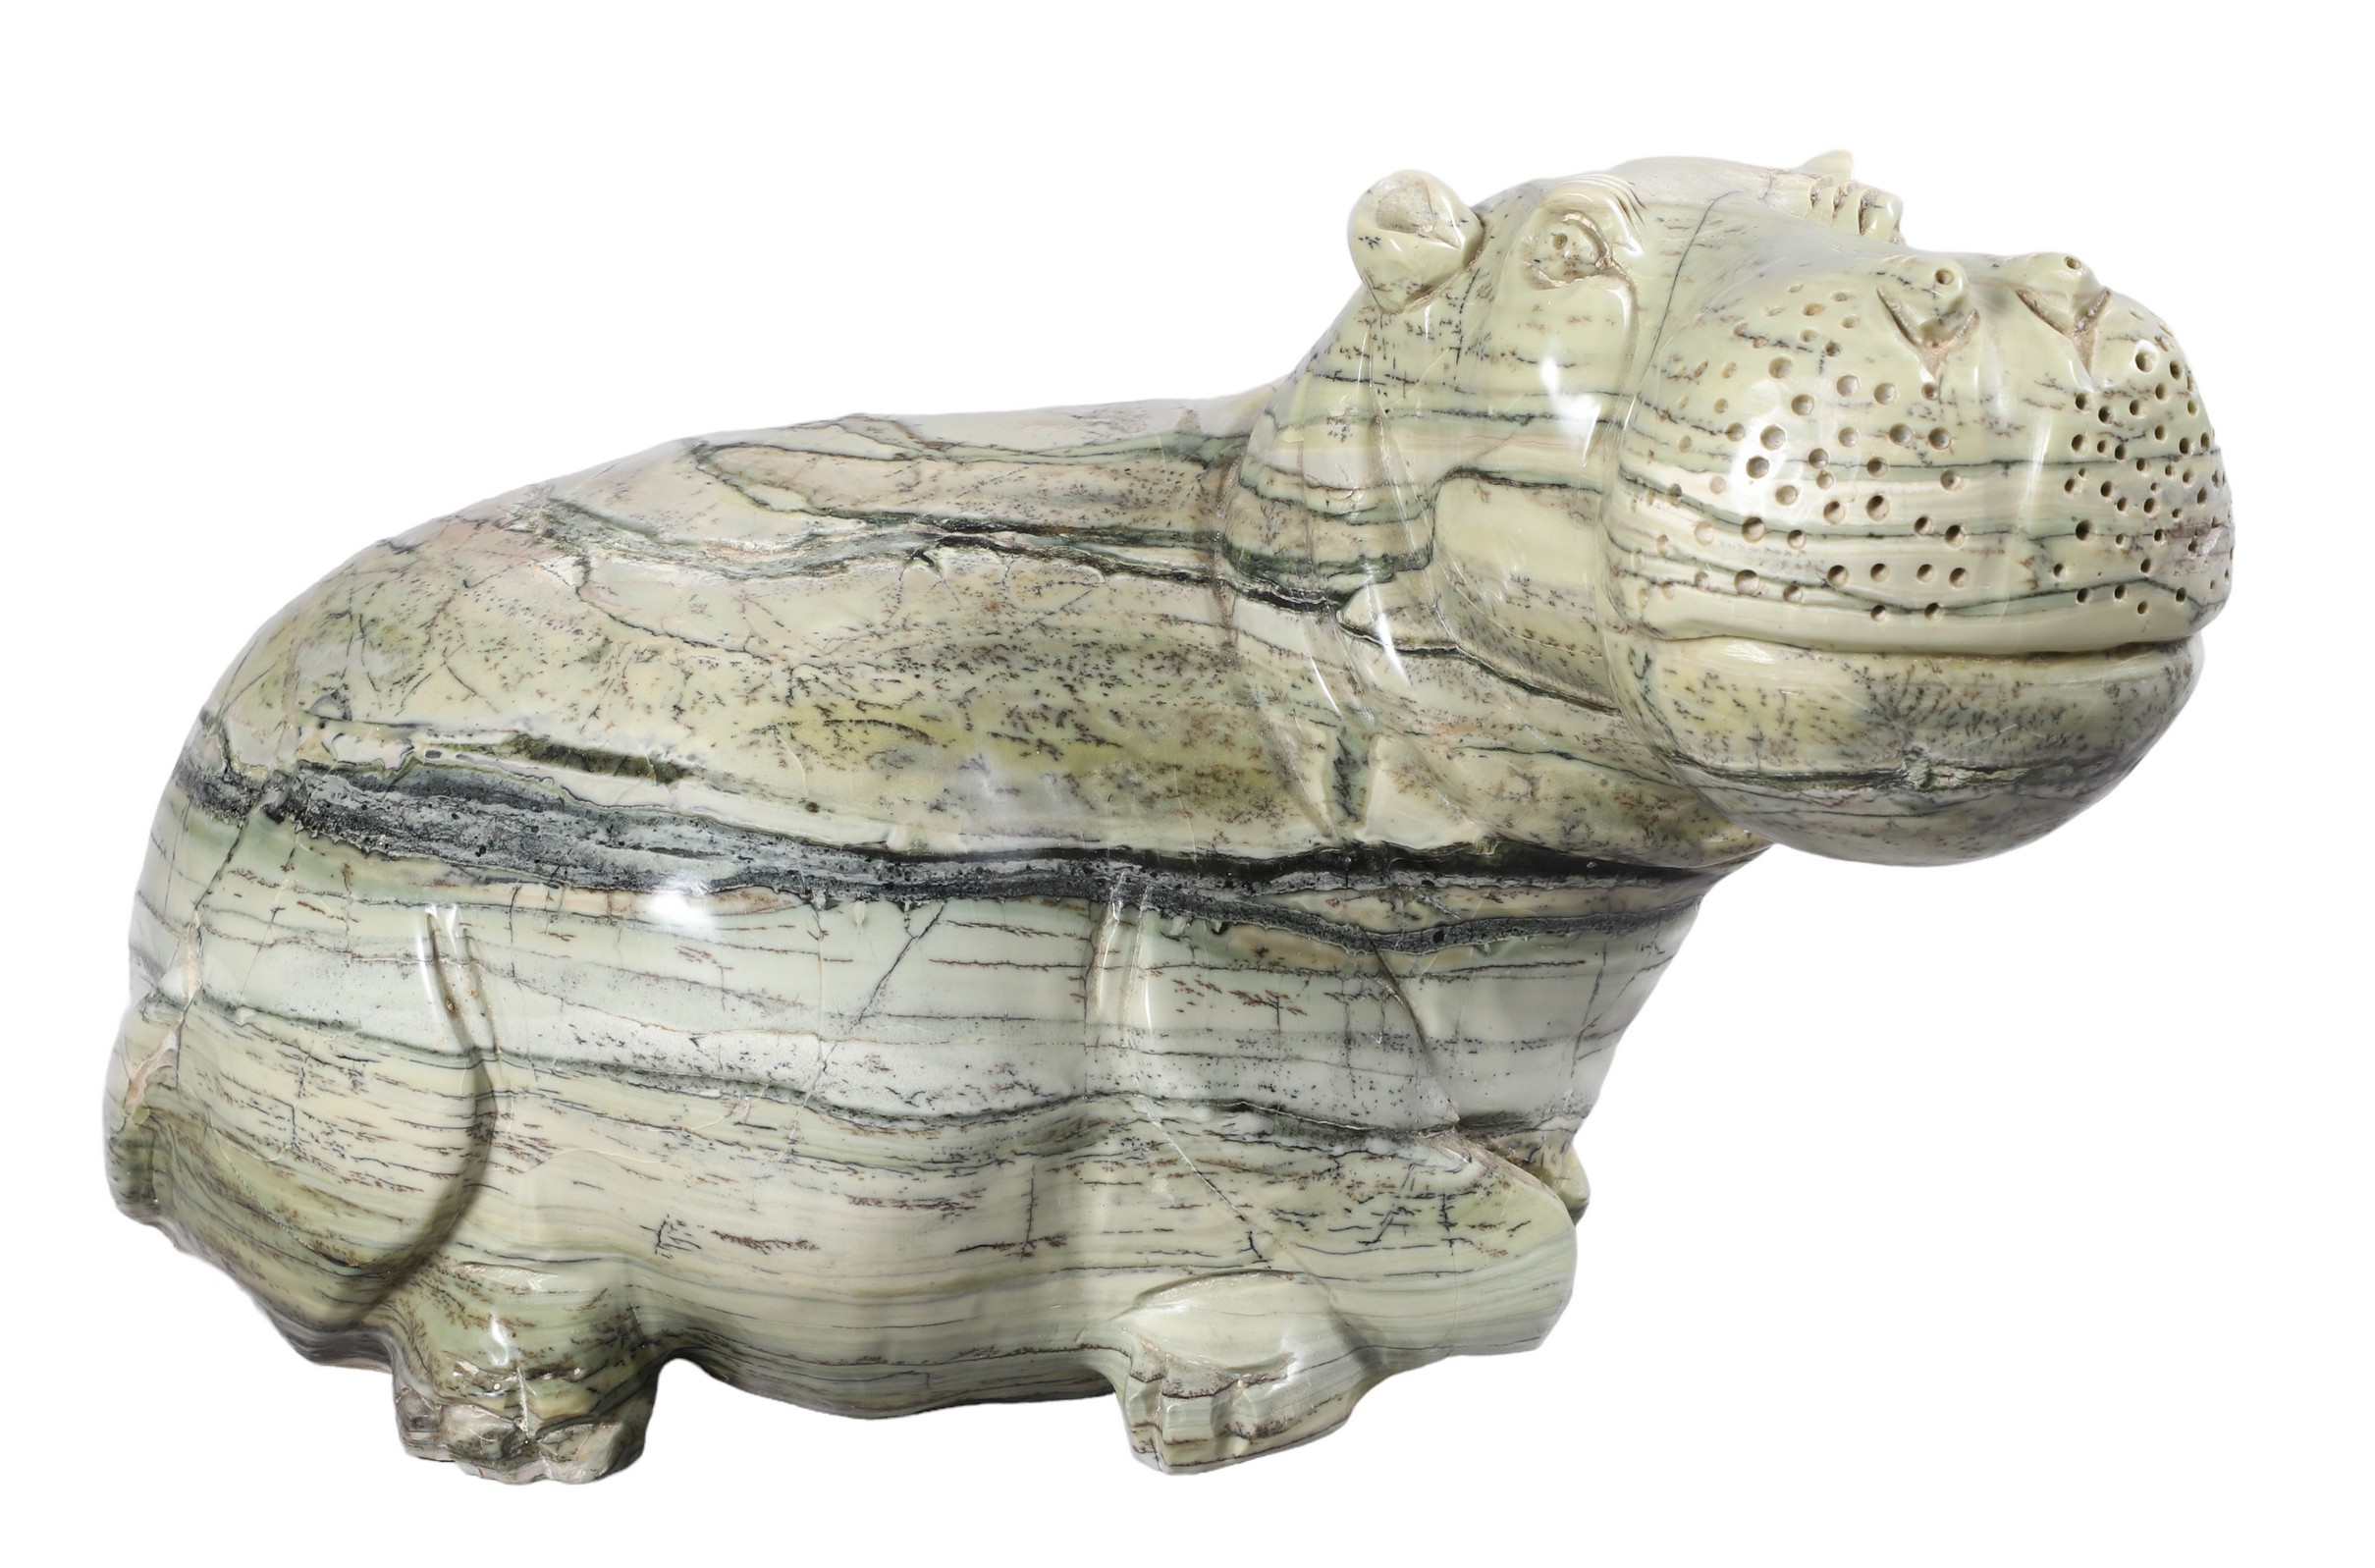 Carved stone hippopotamus figure  2e0c9a